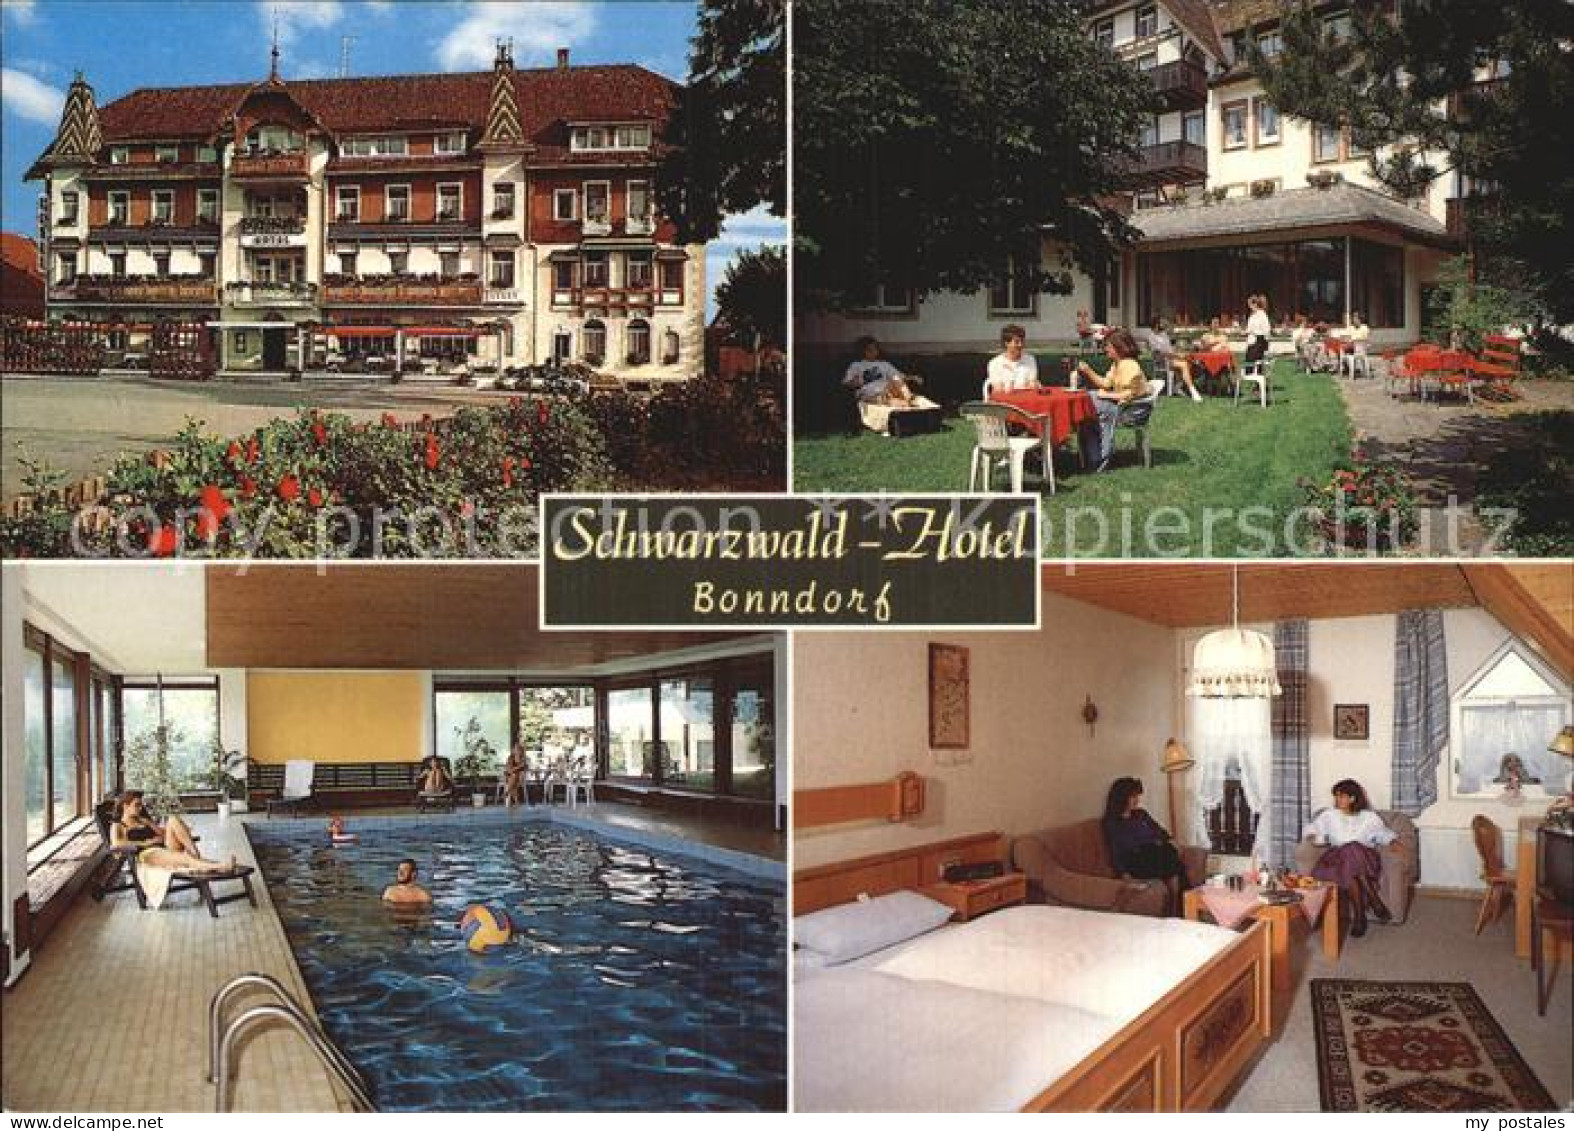 72487435 Bonndorf Schwarzwald Schwarzwald-Hotel Bonndorf - Bonndorf